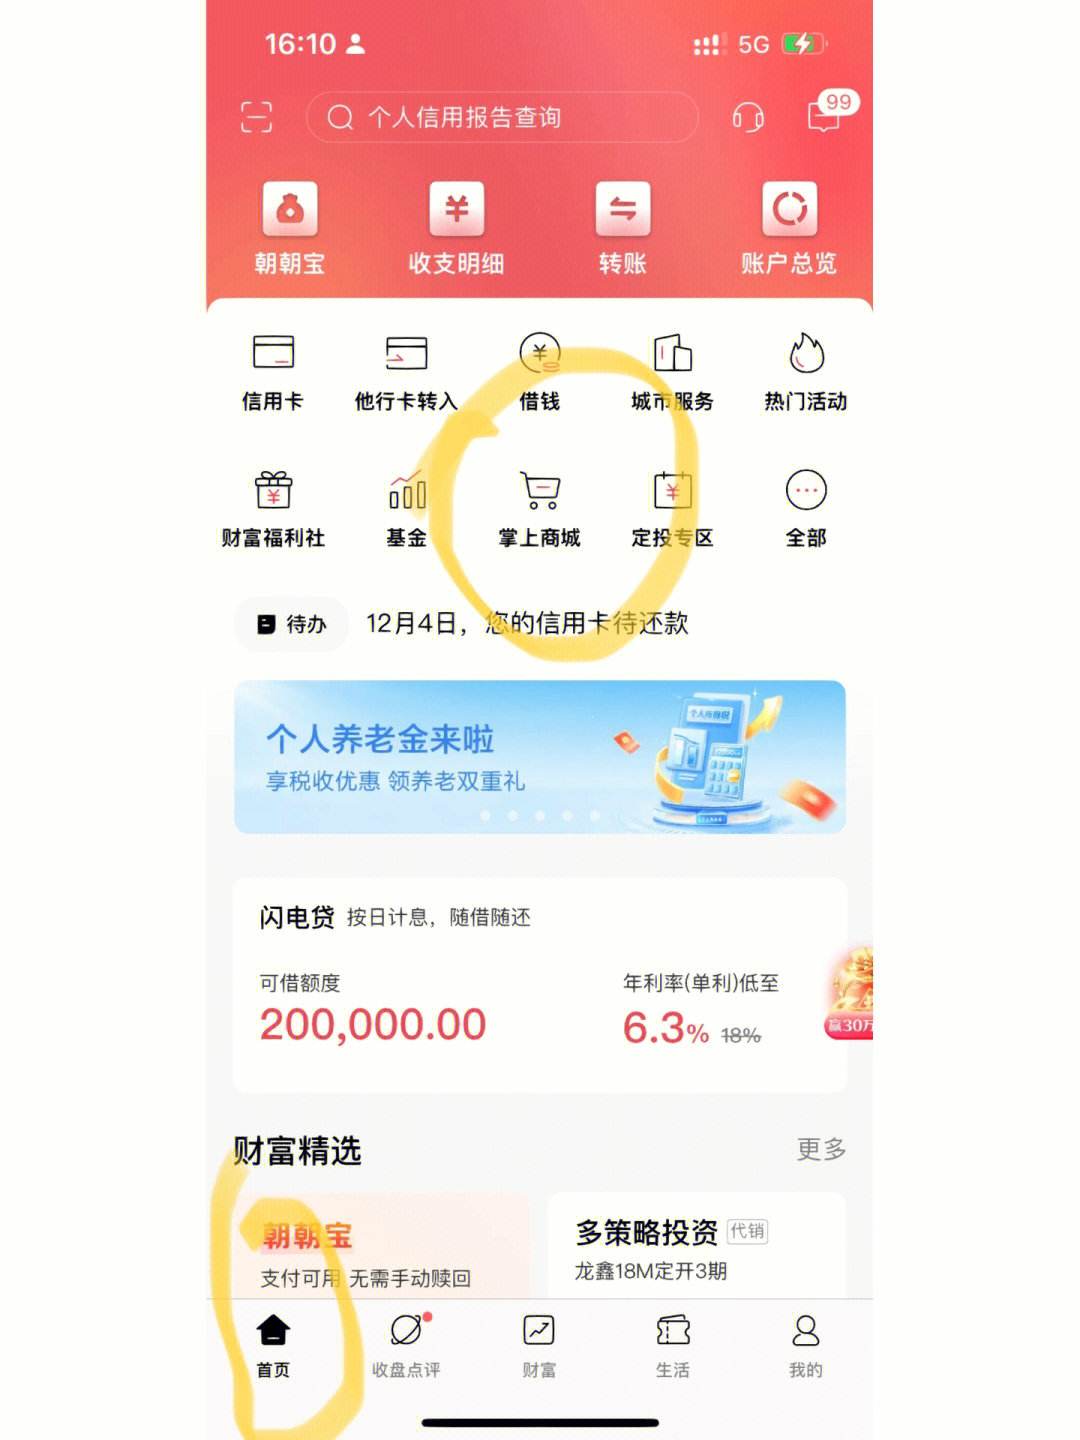 招行手机资讯招行信用卡手机app